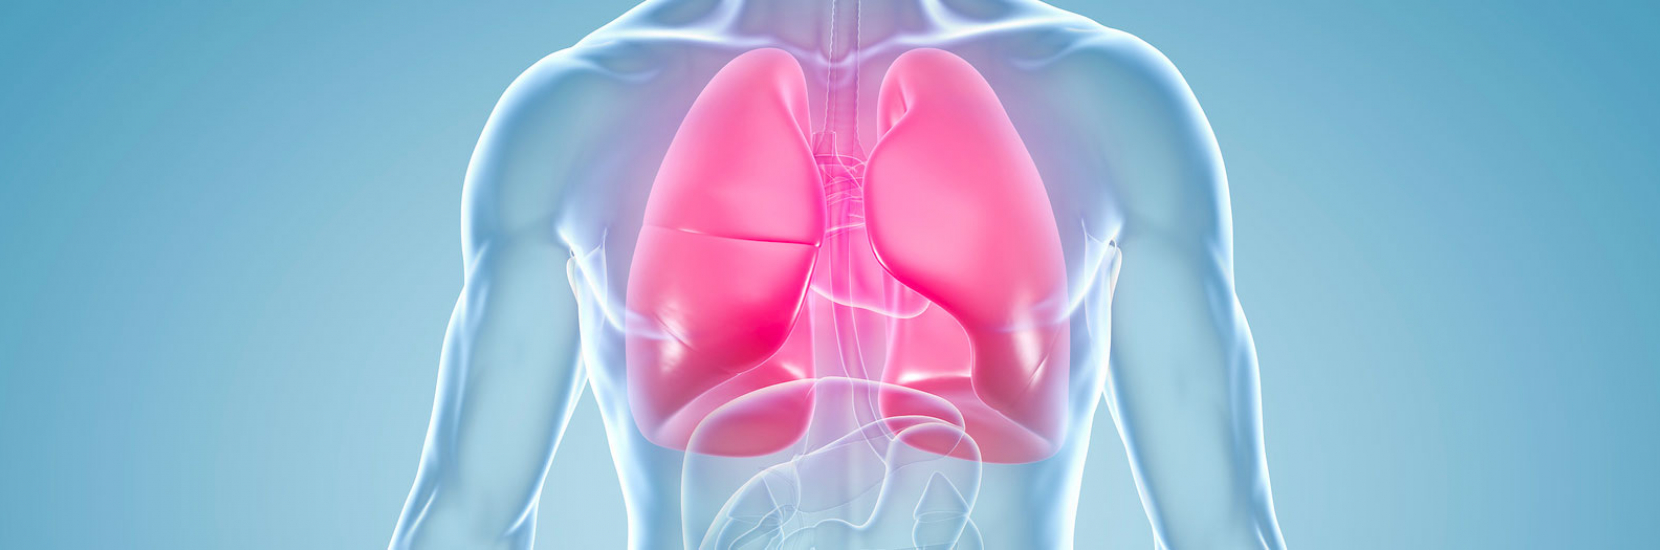 L'embolie pulmonaire | CHL